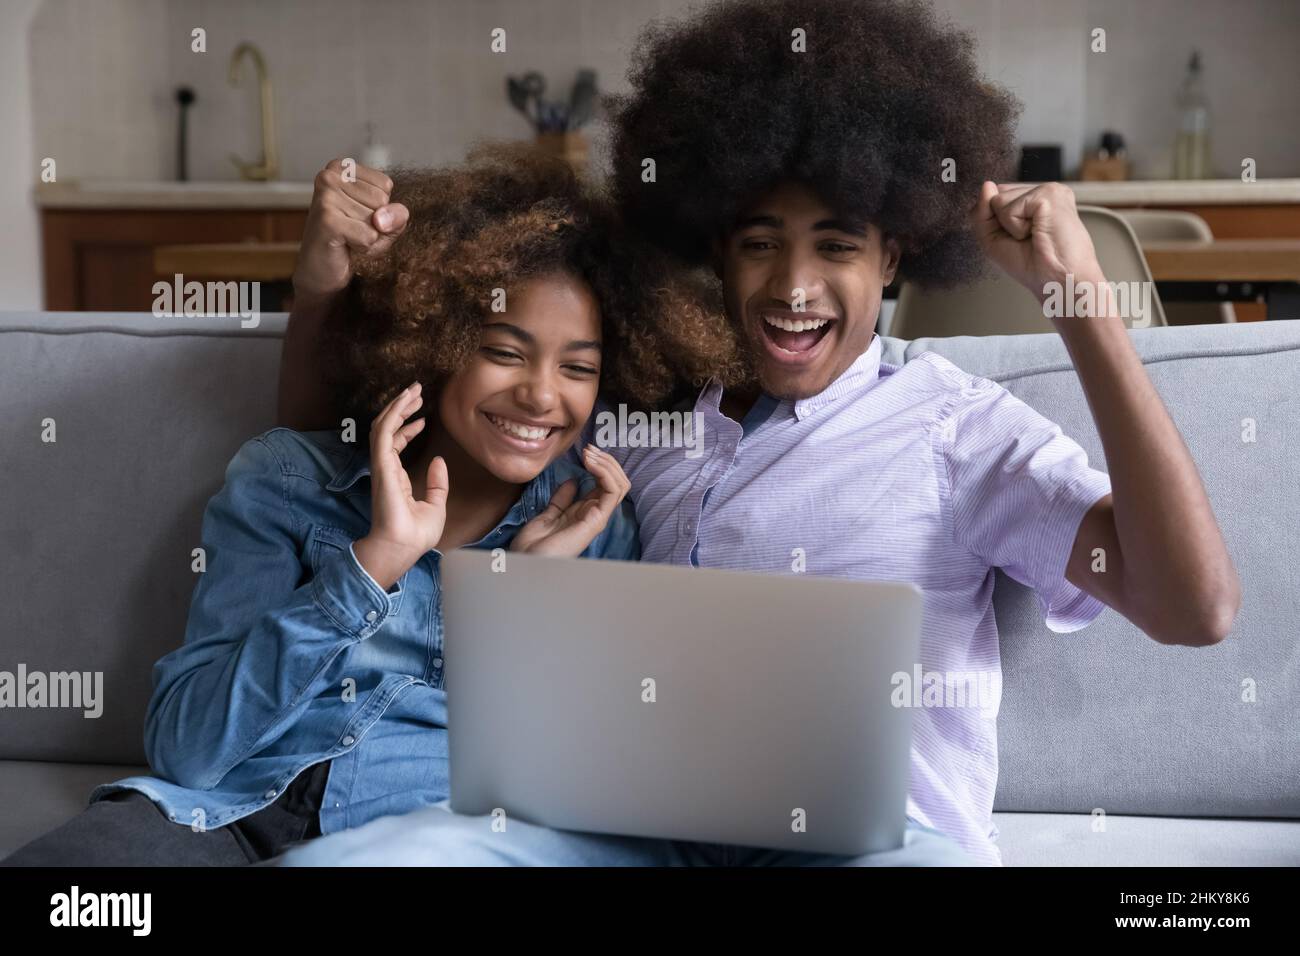 J'ai surpris un couple adolescent africain qui utilisait un ordinateur portable Banque D'Images